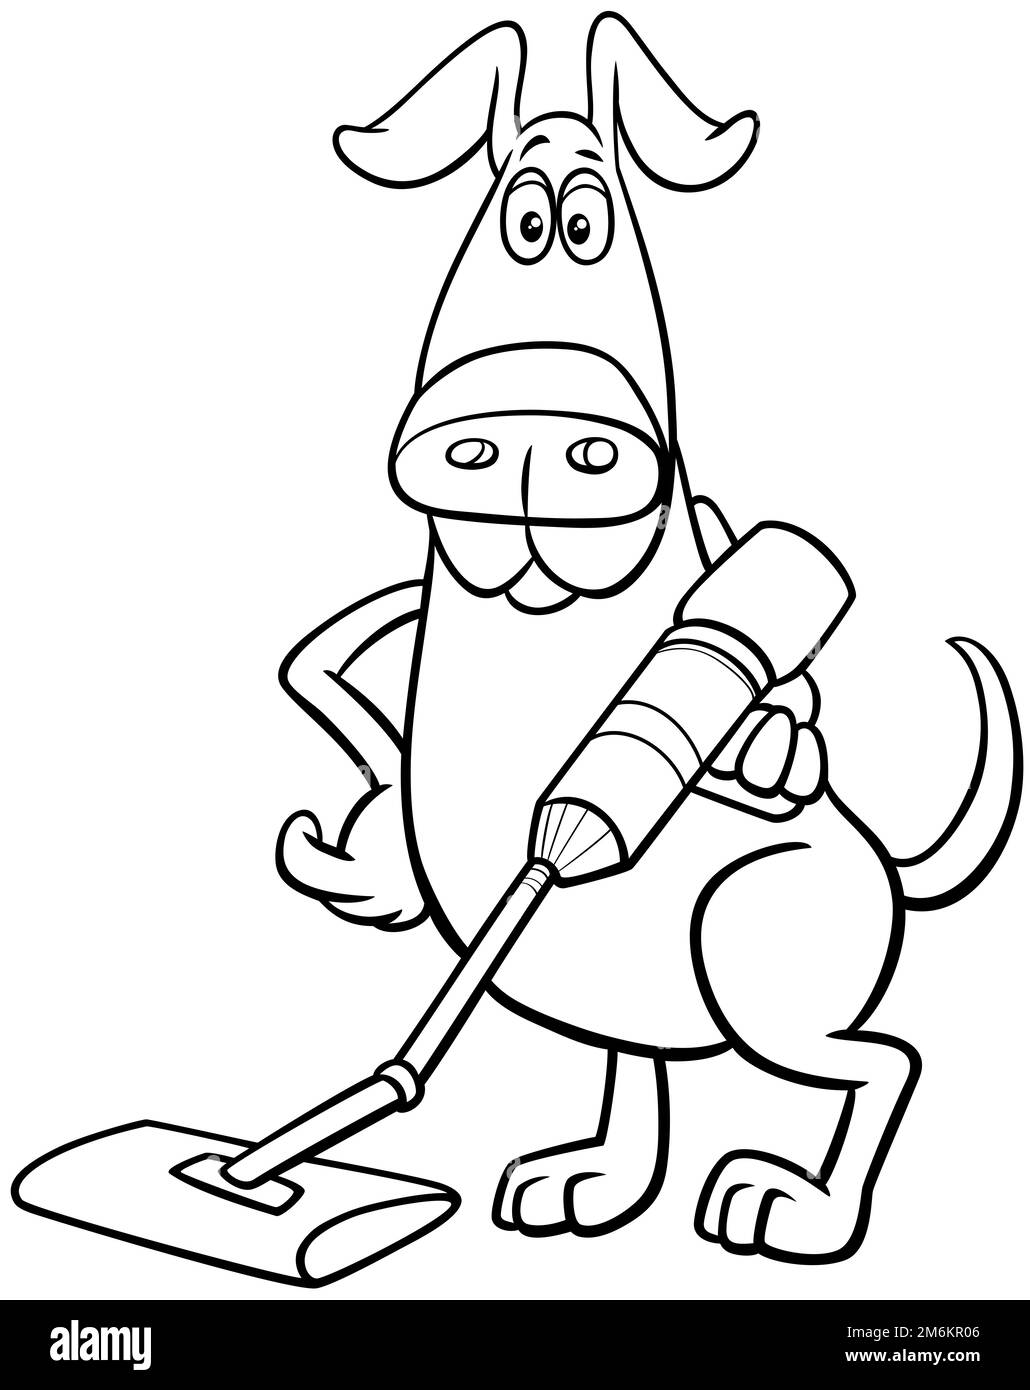 Personnage de chien de dessin animé avec page de coloriage pour aspirateur Banque D'Images